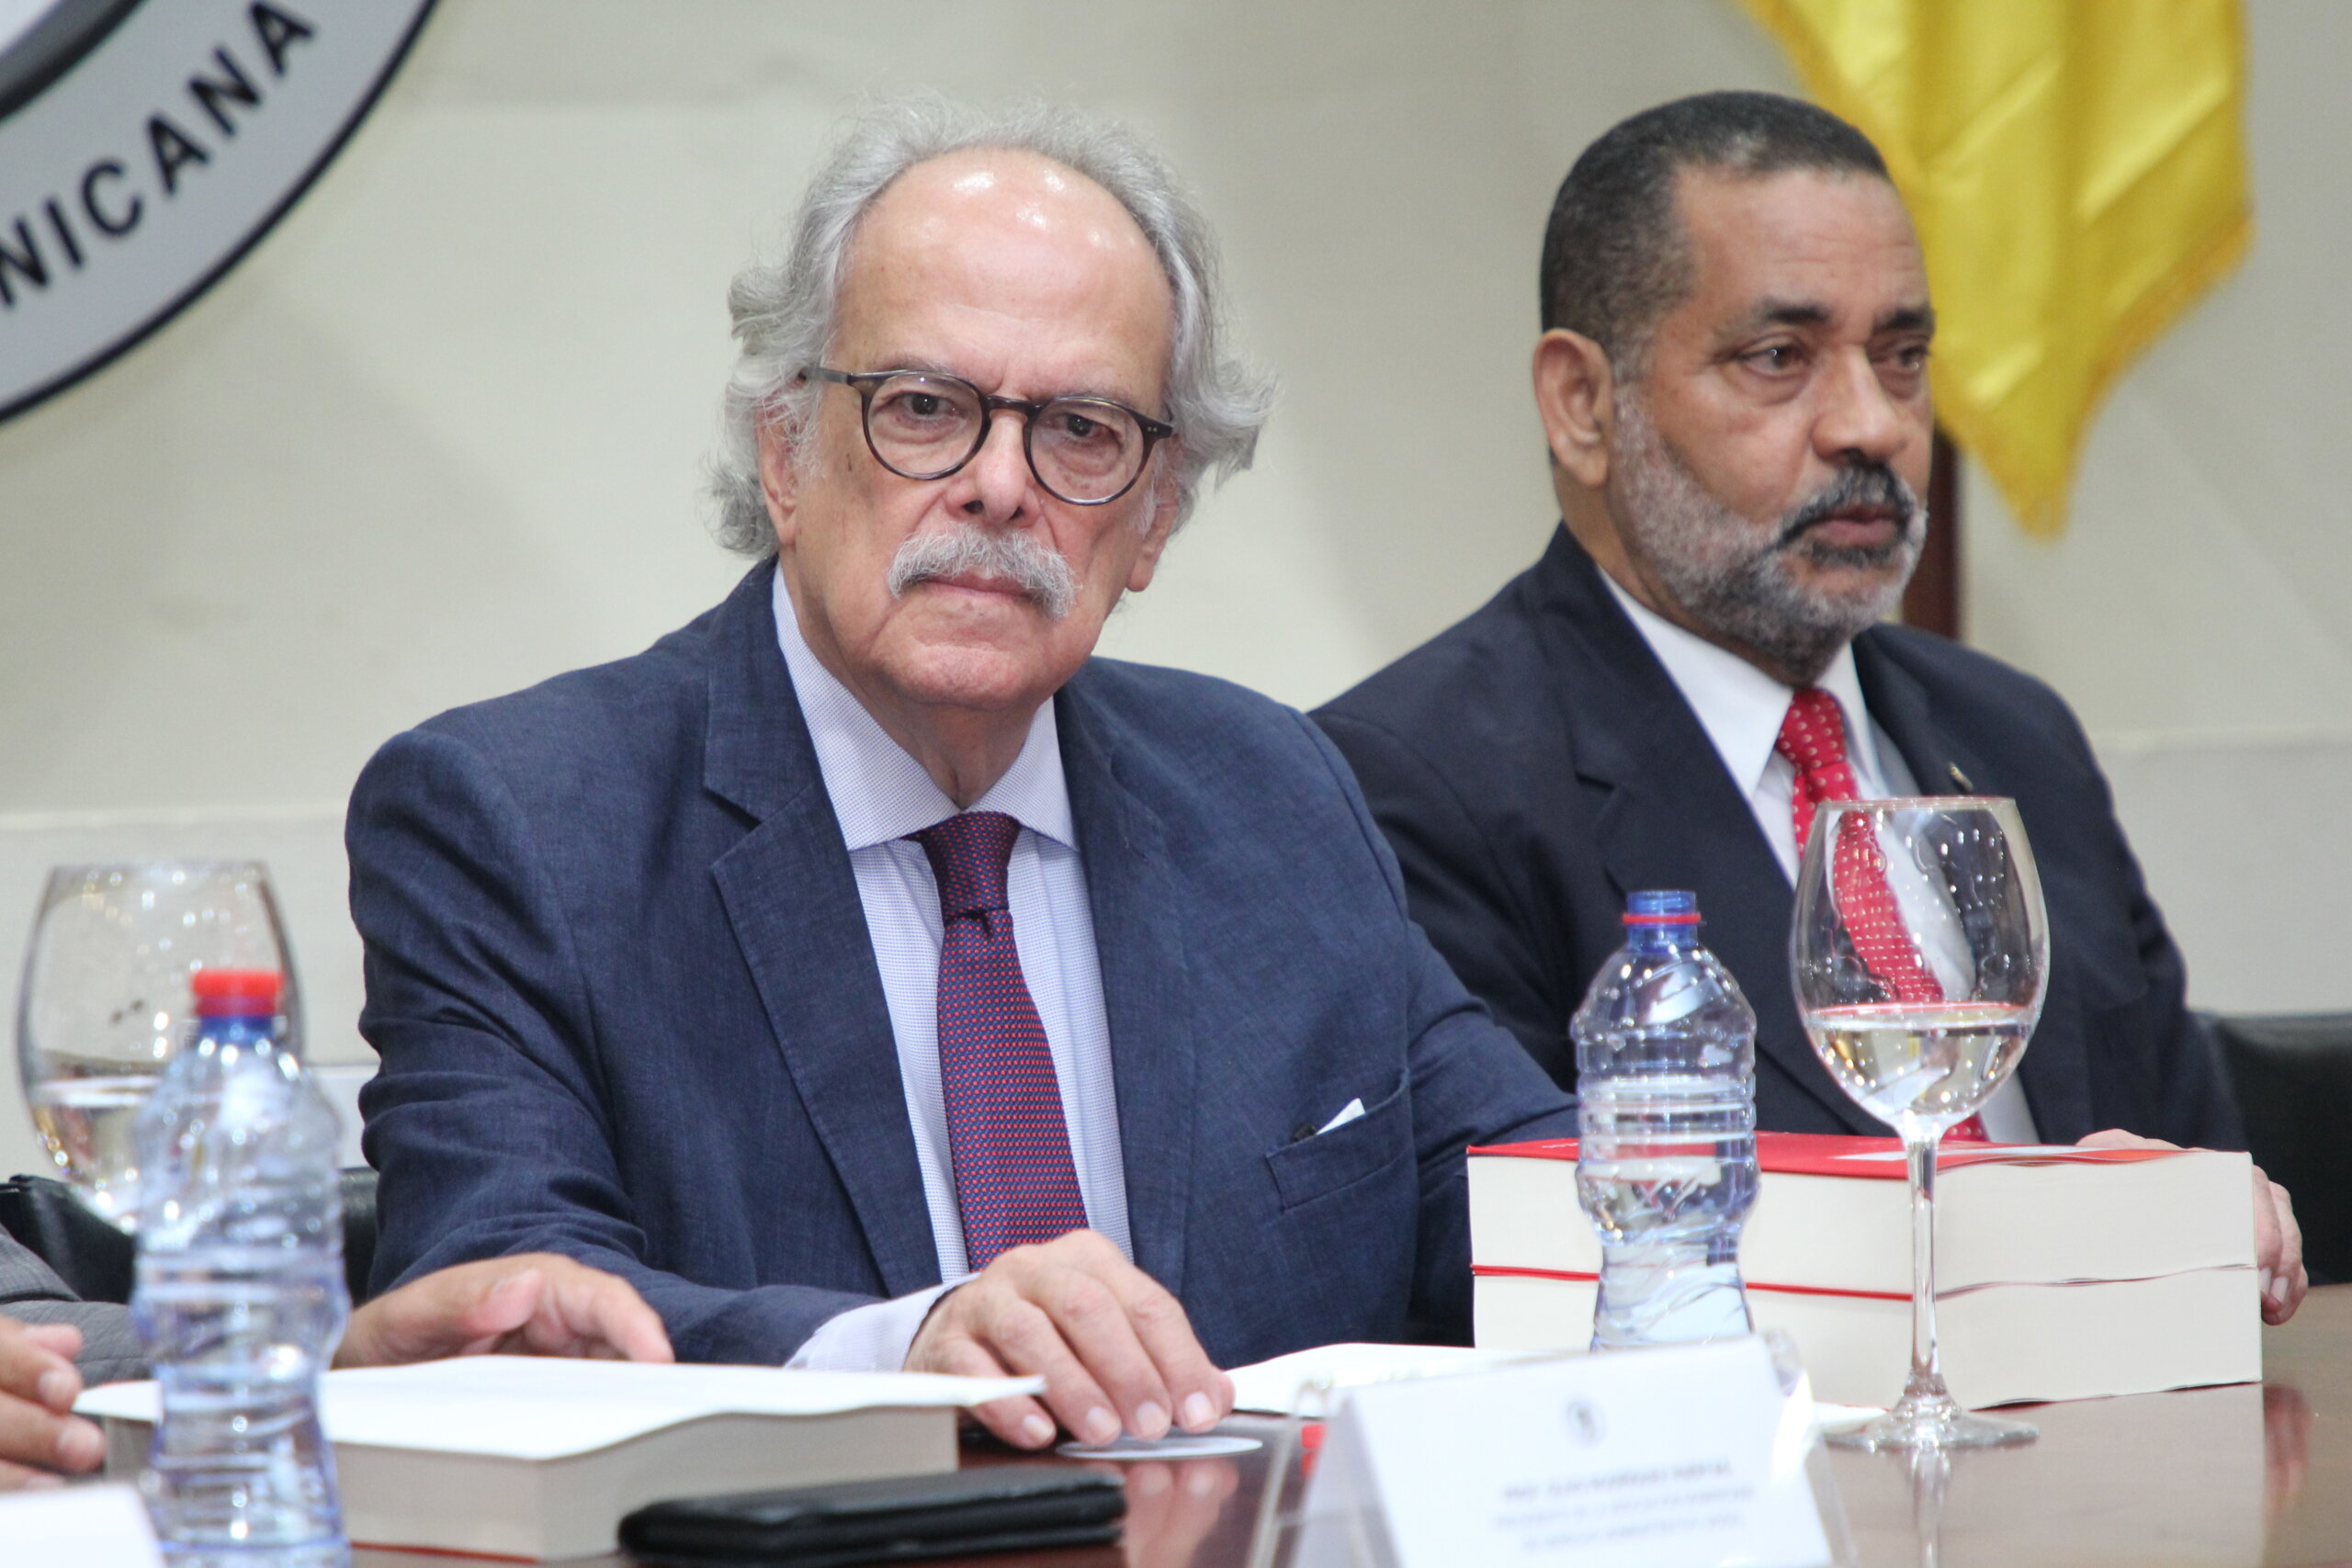 Jurista Allan R. Brewer conjunto al Decano de Humanidades Mariano Rodriguez